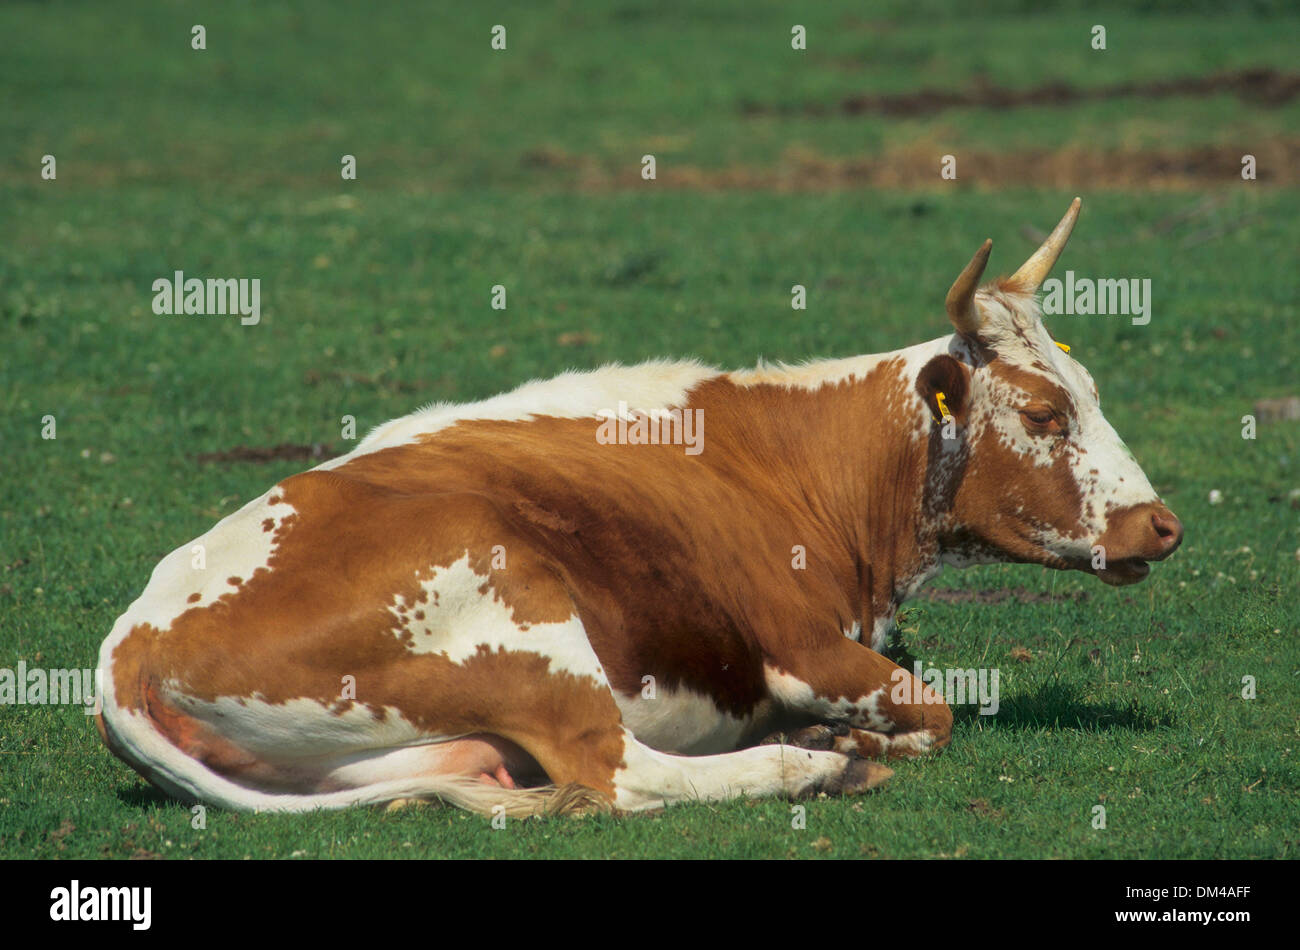 Norwegian cattle breed, Telemark cattle or Telemark cow, Telemarkrind, norwegische Rinderrasse Stock Photo